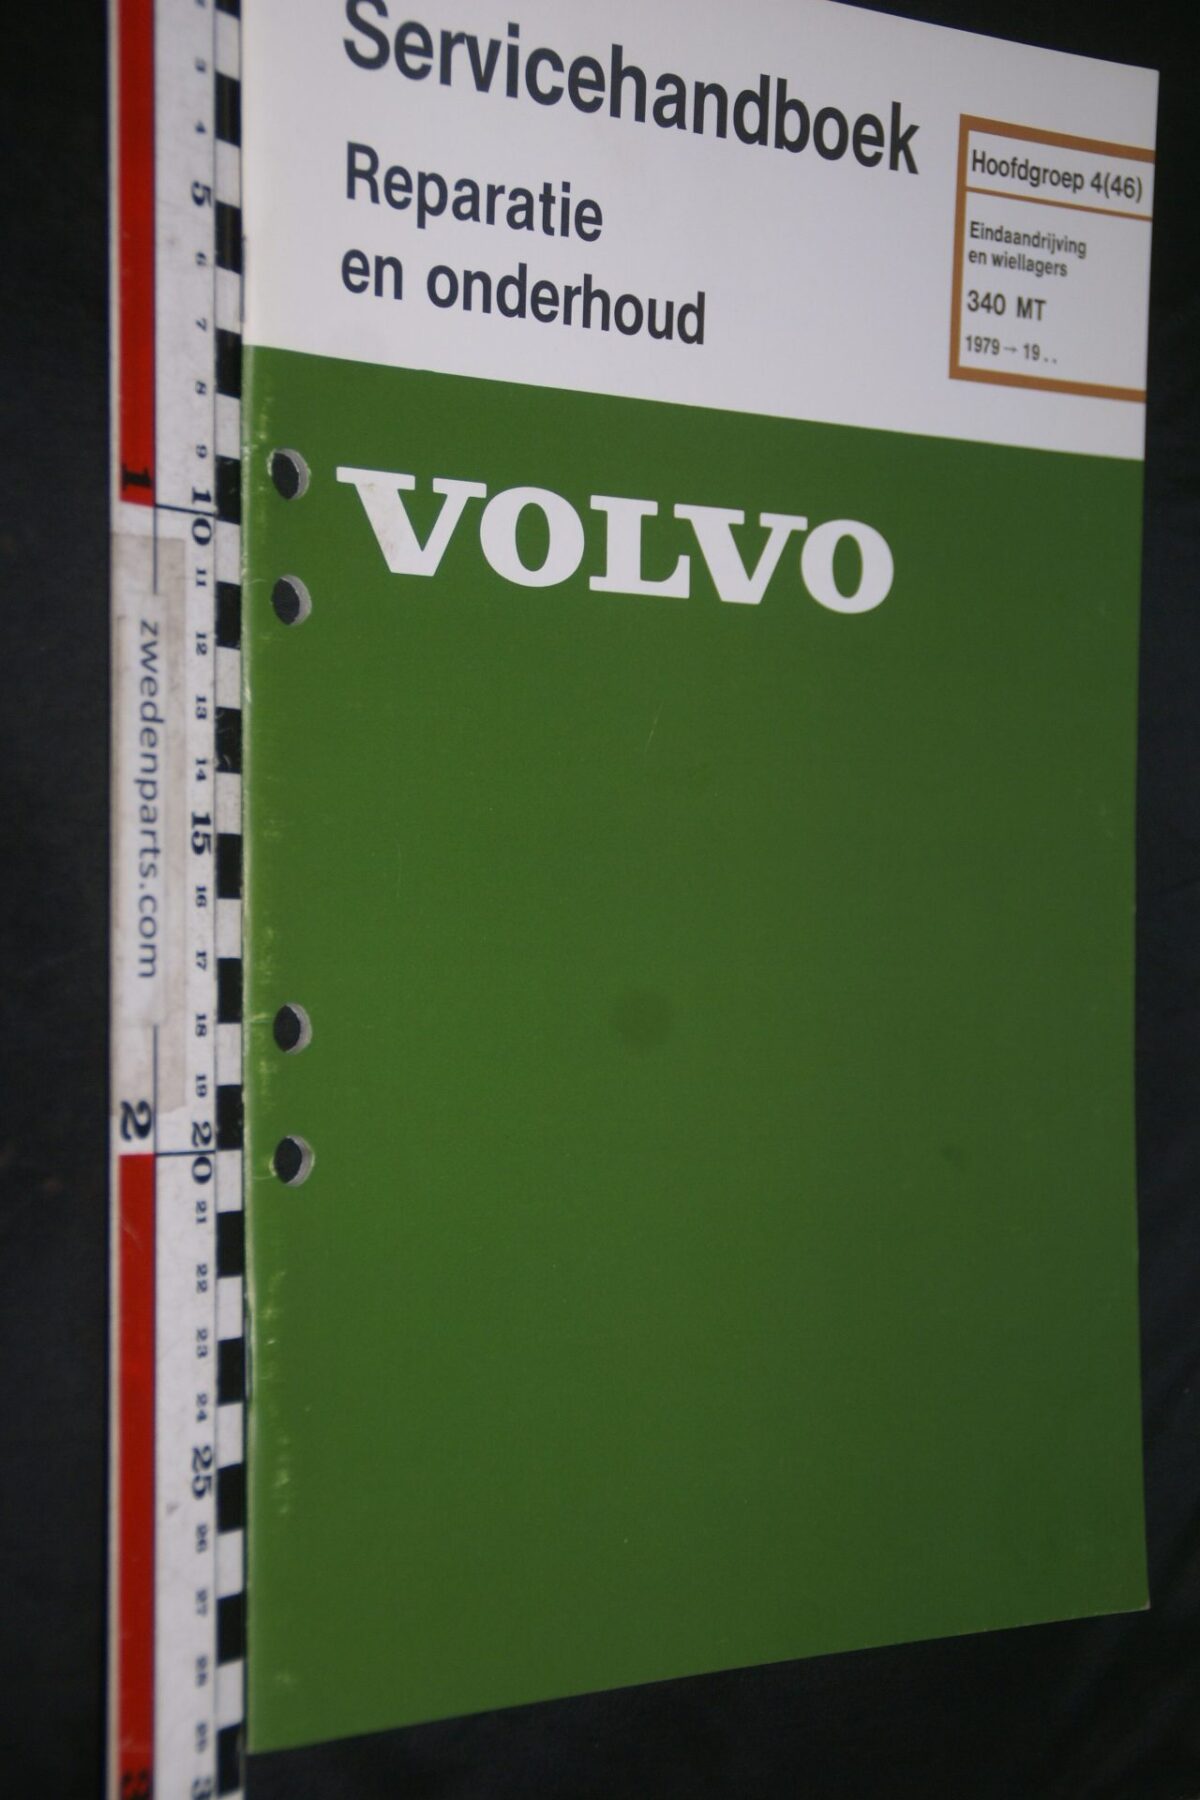 DSC07223 1979 origineel Volvo 340 MT  servicehandboek  4(46) eindaandrijving 1 van 800 TP 12436-2